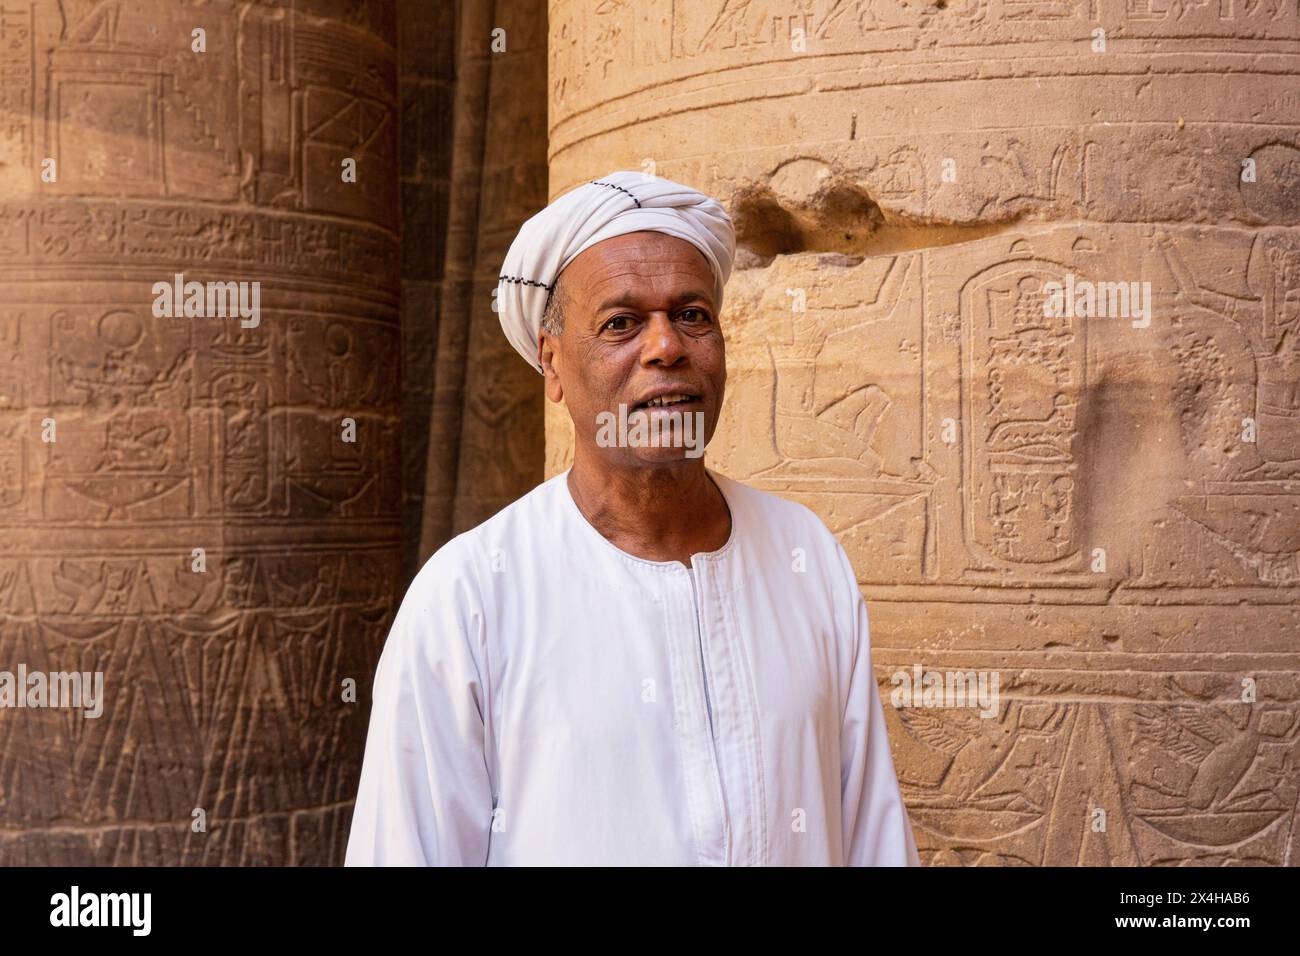 Un égyptien en tenue traditionnelle à l'intérieur du temple d'Isis au complexe du temple de Philae (un site du patrimoine mondial de l'UNESCO) sur l'île d'Agilkia, en Égypte Banque D'Images